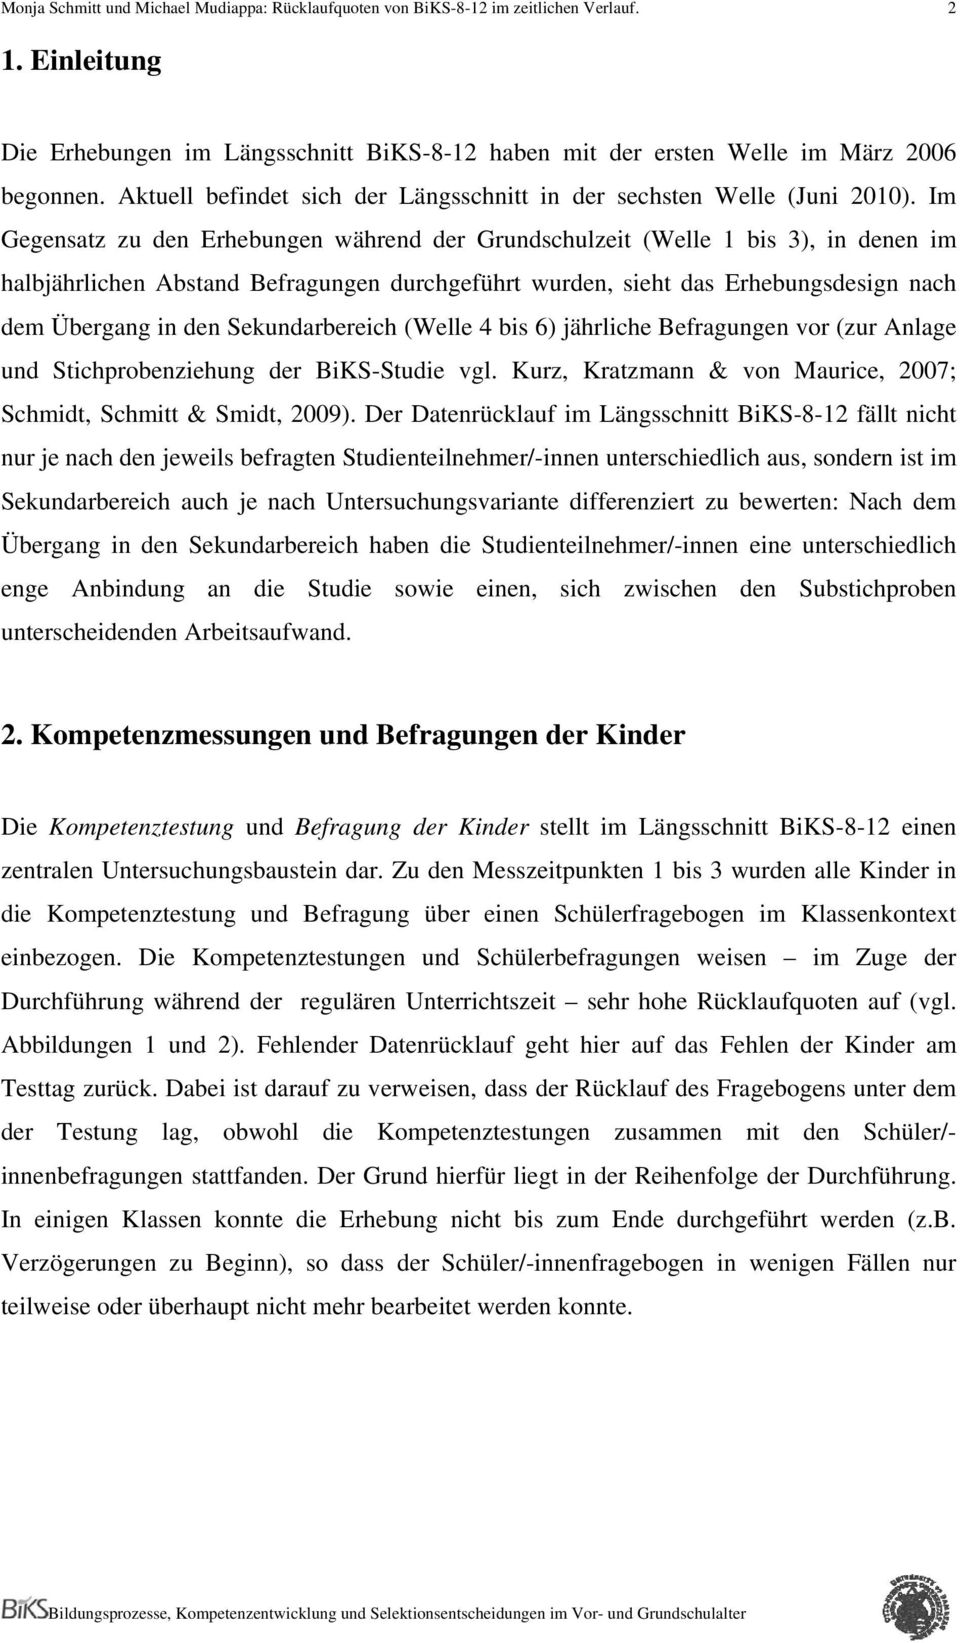 Sekundarbereich (Welle 4 bis 6) jährliche Befragungen vor (zur Anlage und Stichprobenziehung der BiKS-Studie vgl. Kurz, Kratzmann & von Maurice, 2007; Schmidt, Schmitt & Smidt, 2009).